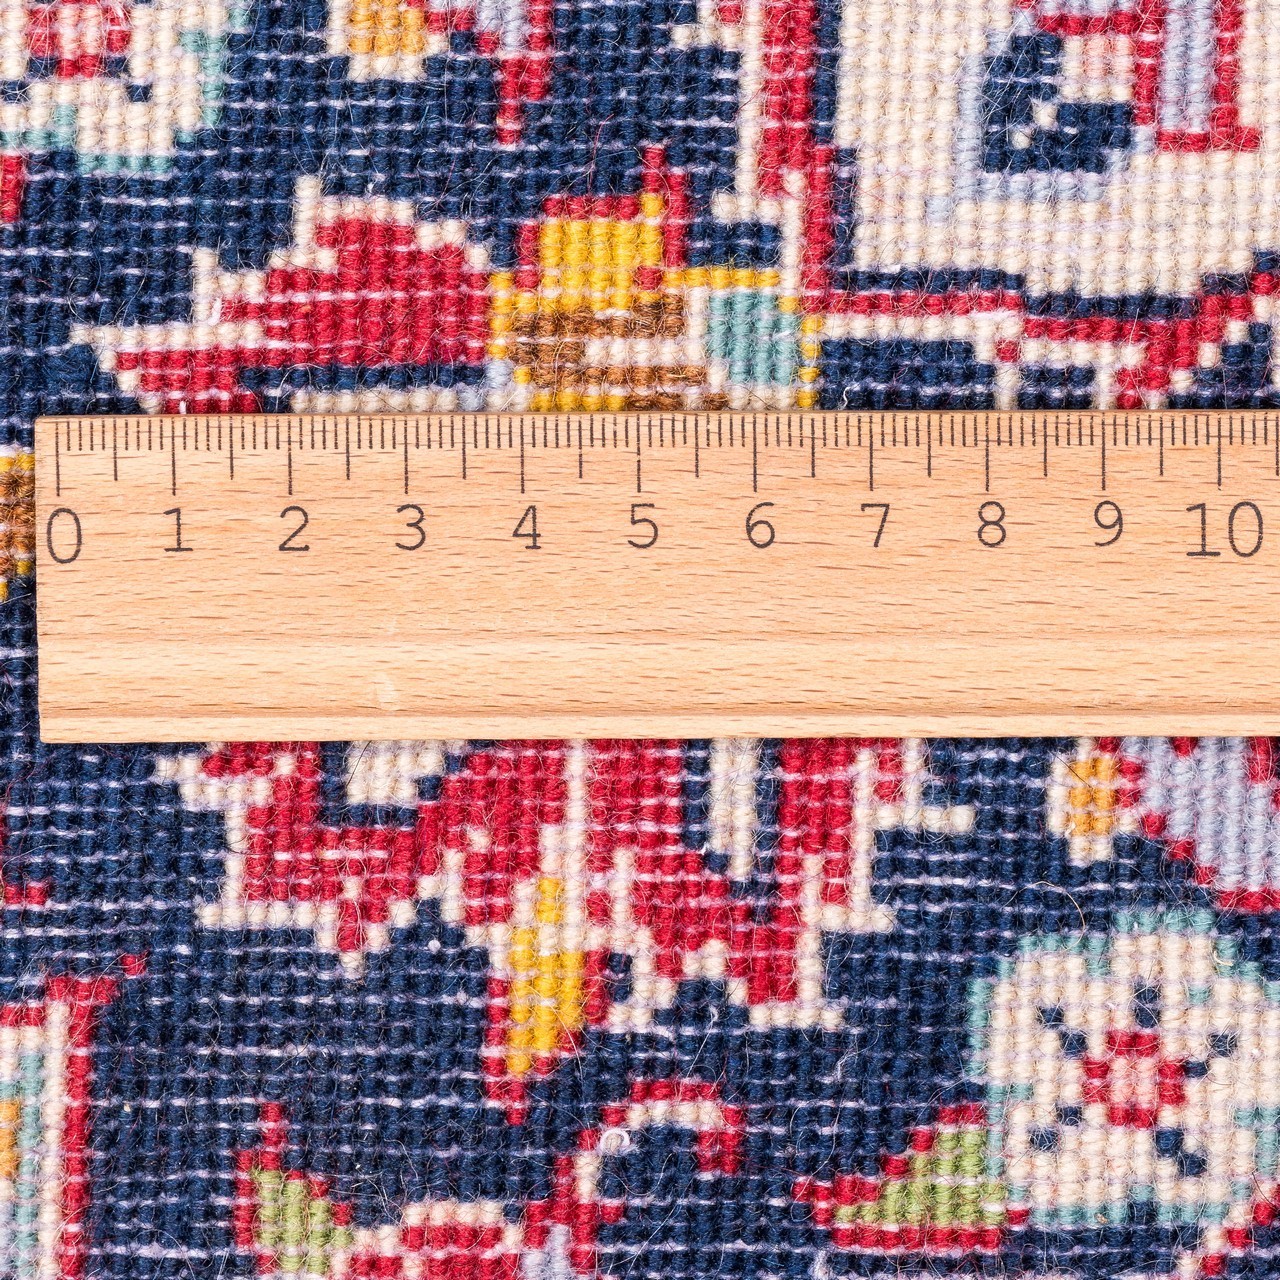 یک جفت فرش دستباف قدیمی ذرع و نیم کاشان کد 166091